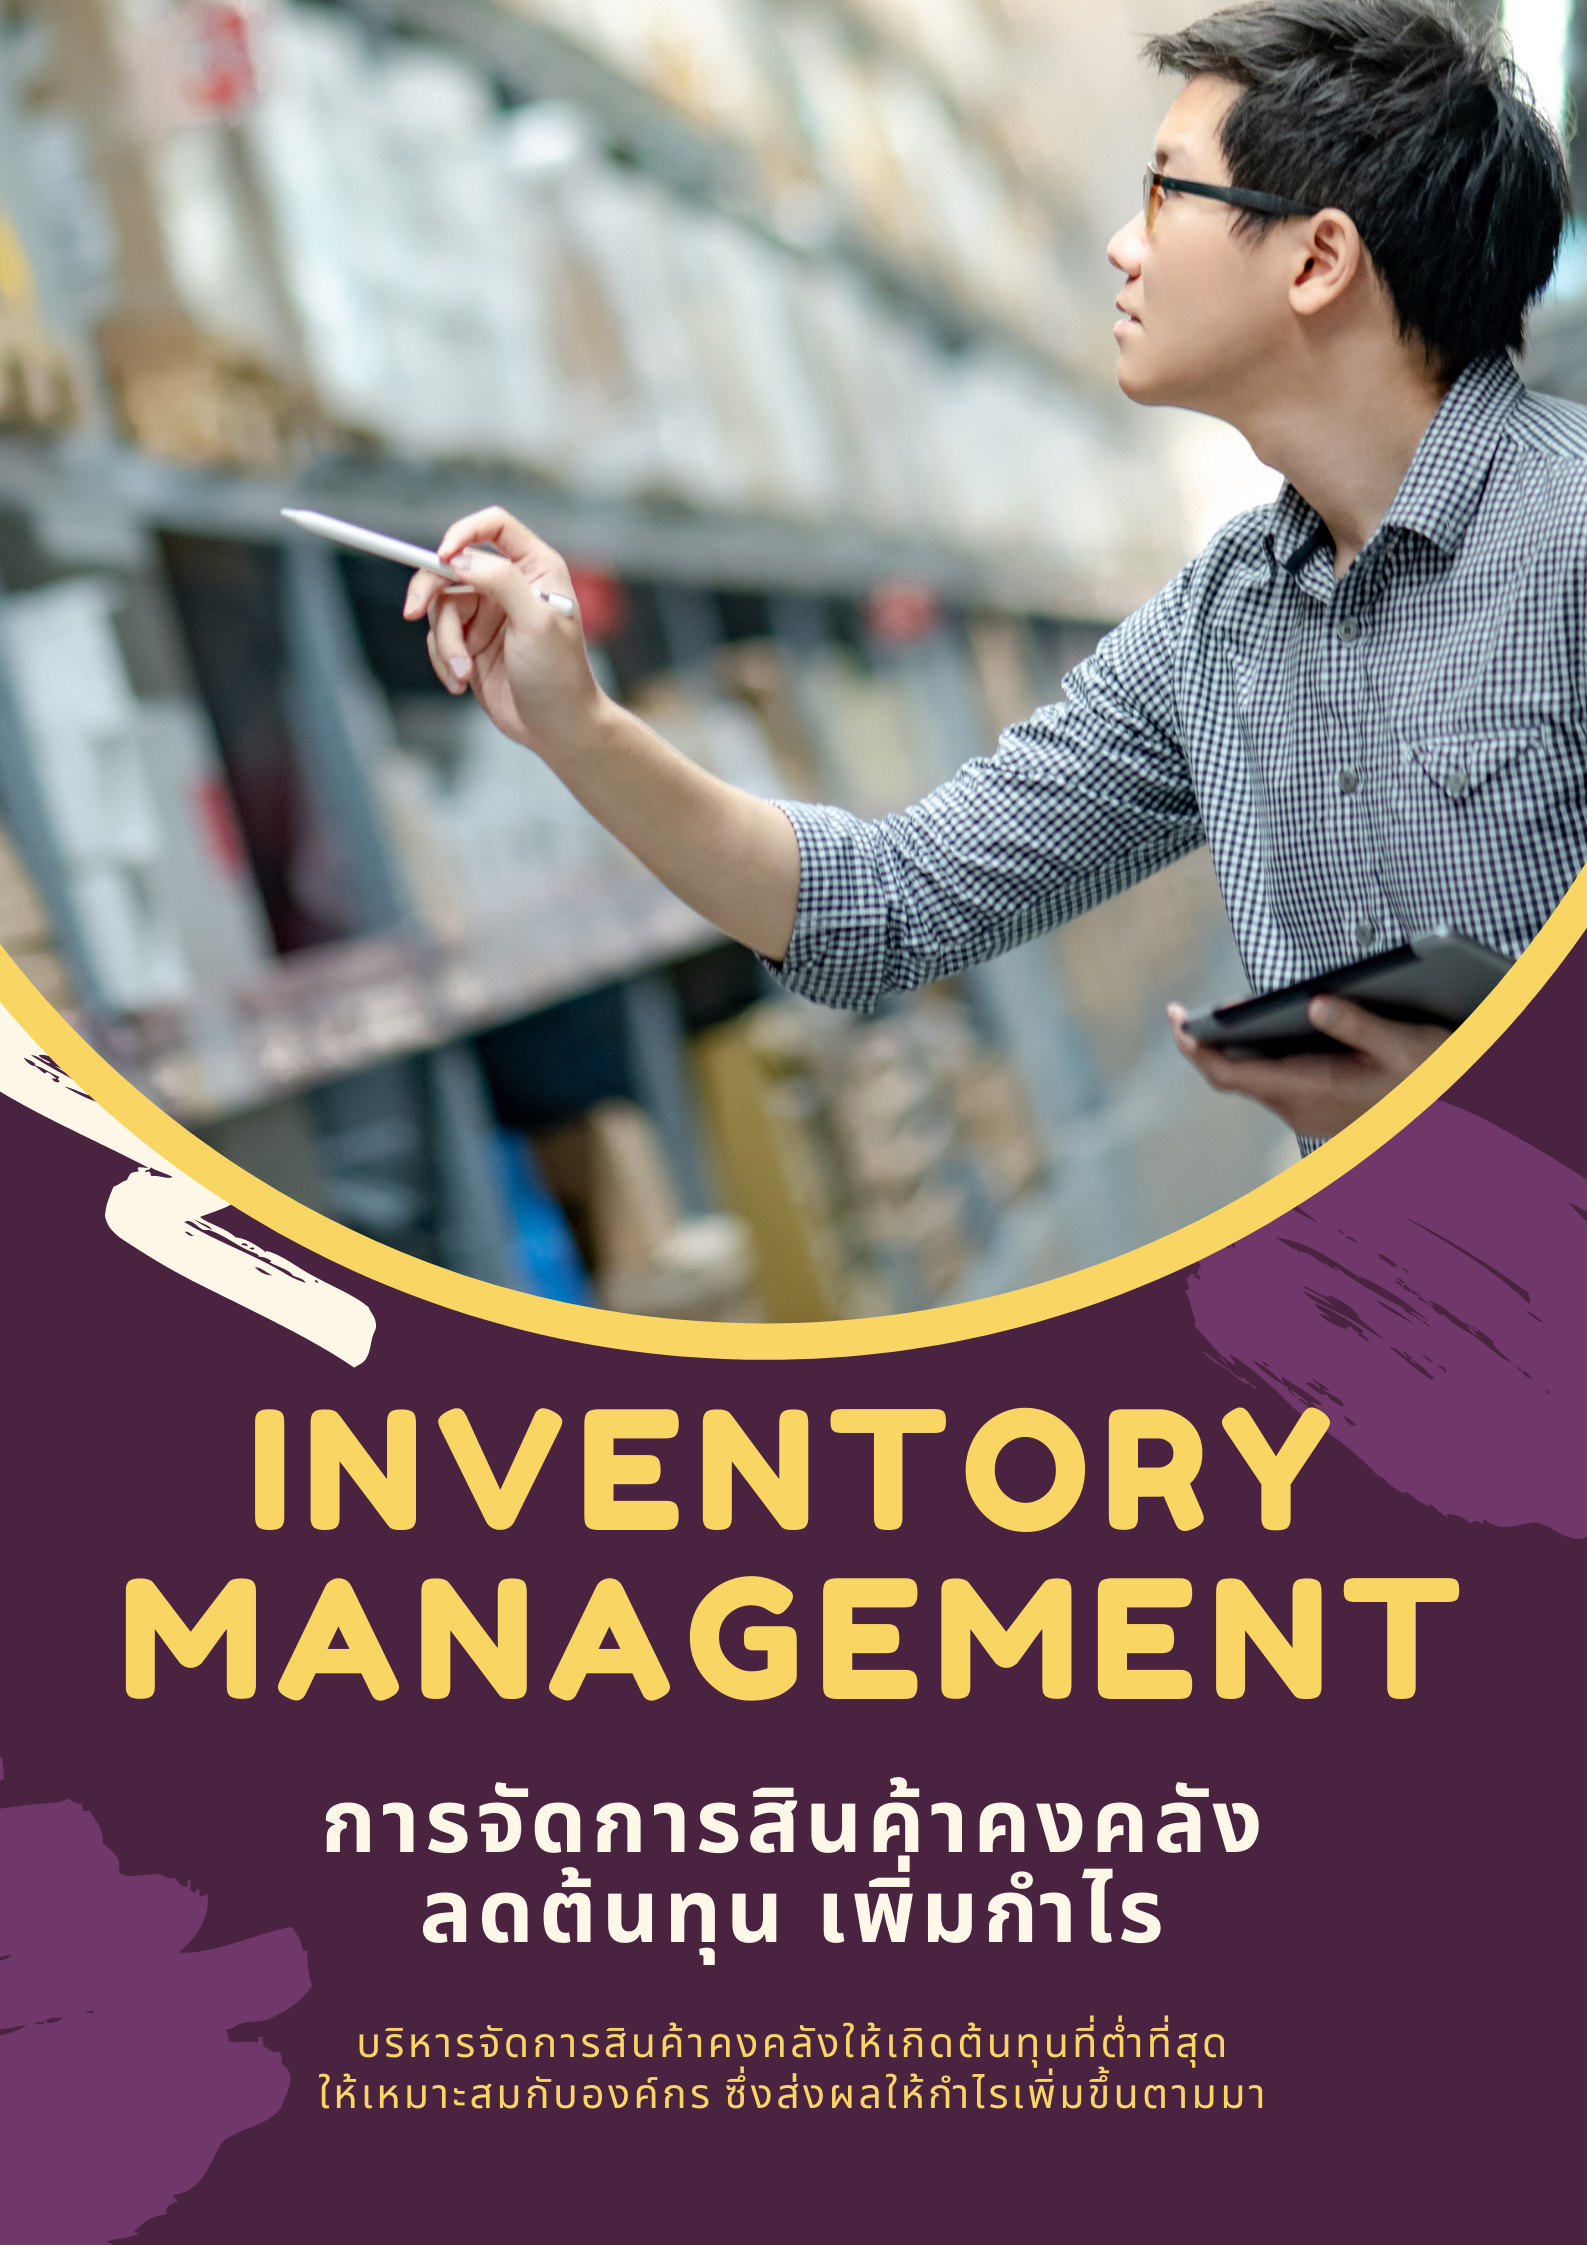 หลักสูตรอบรมออนไลน์ : การจัดการสินค้าคงคลัง (Inventory Management) : ต้นทุนลด กำไรเพิ่ม (หลักสูตร 3 ชั่วโมง)